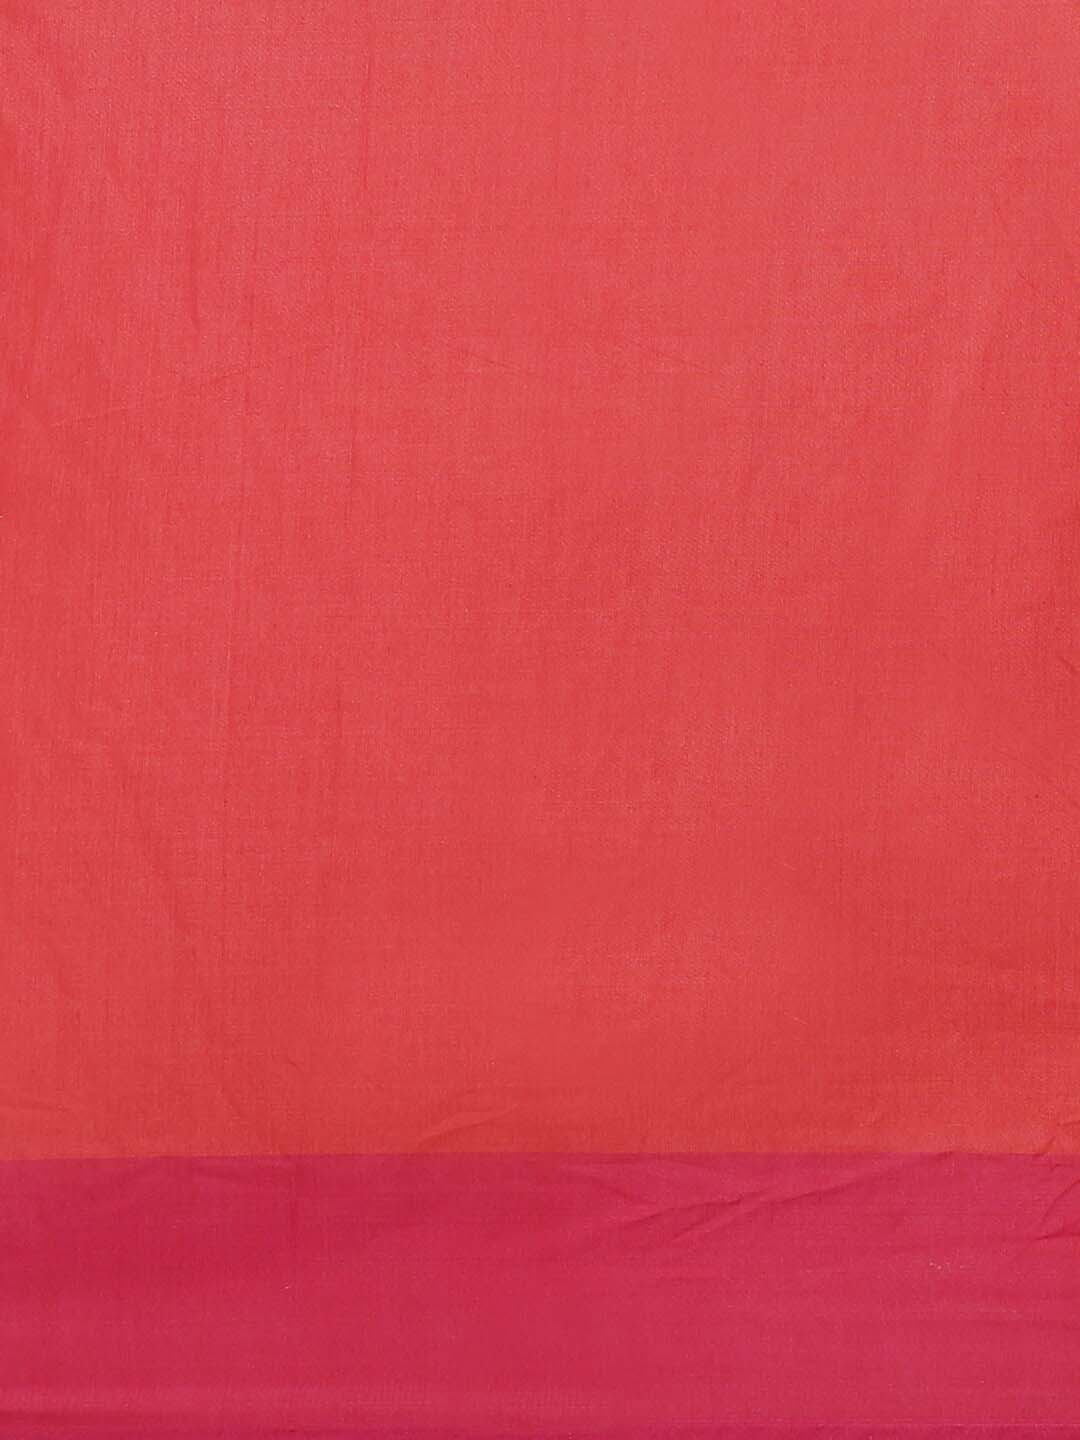 Indethnic Banarasi Red Woven Design Party Wear Saree - Saree Detail View